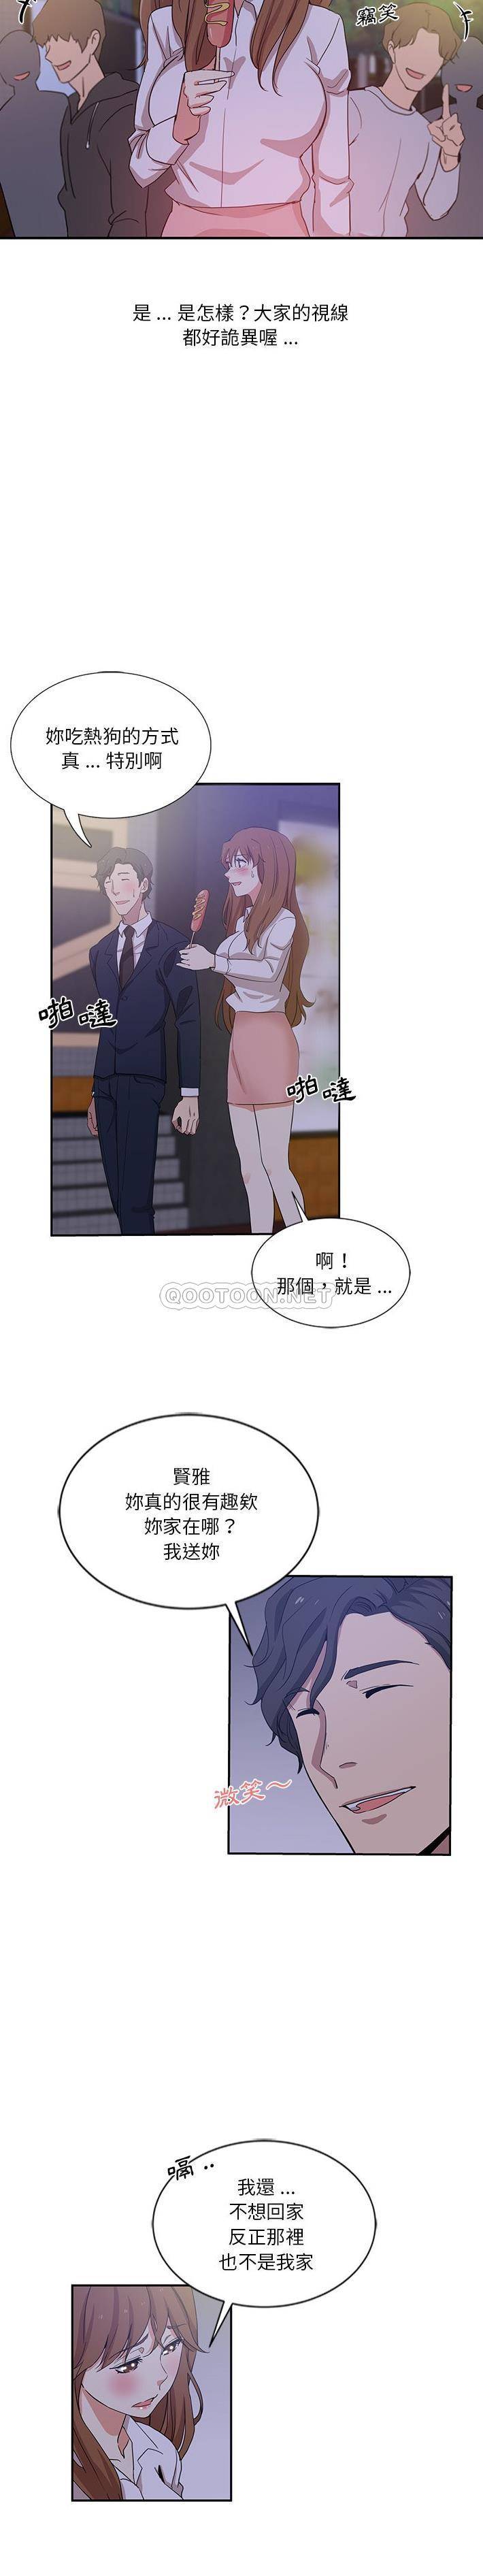 韩国污漫画 危險純友誼 第9话 14